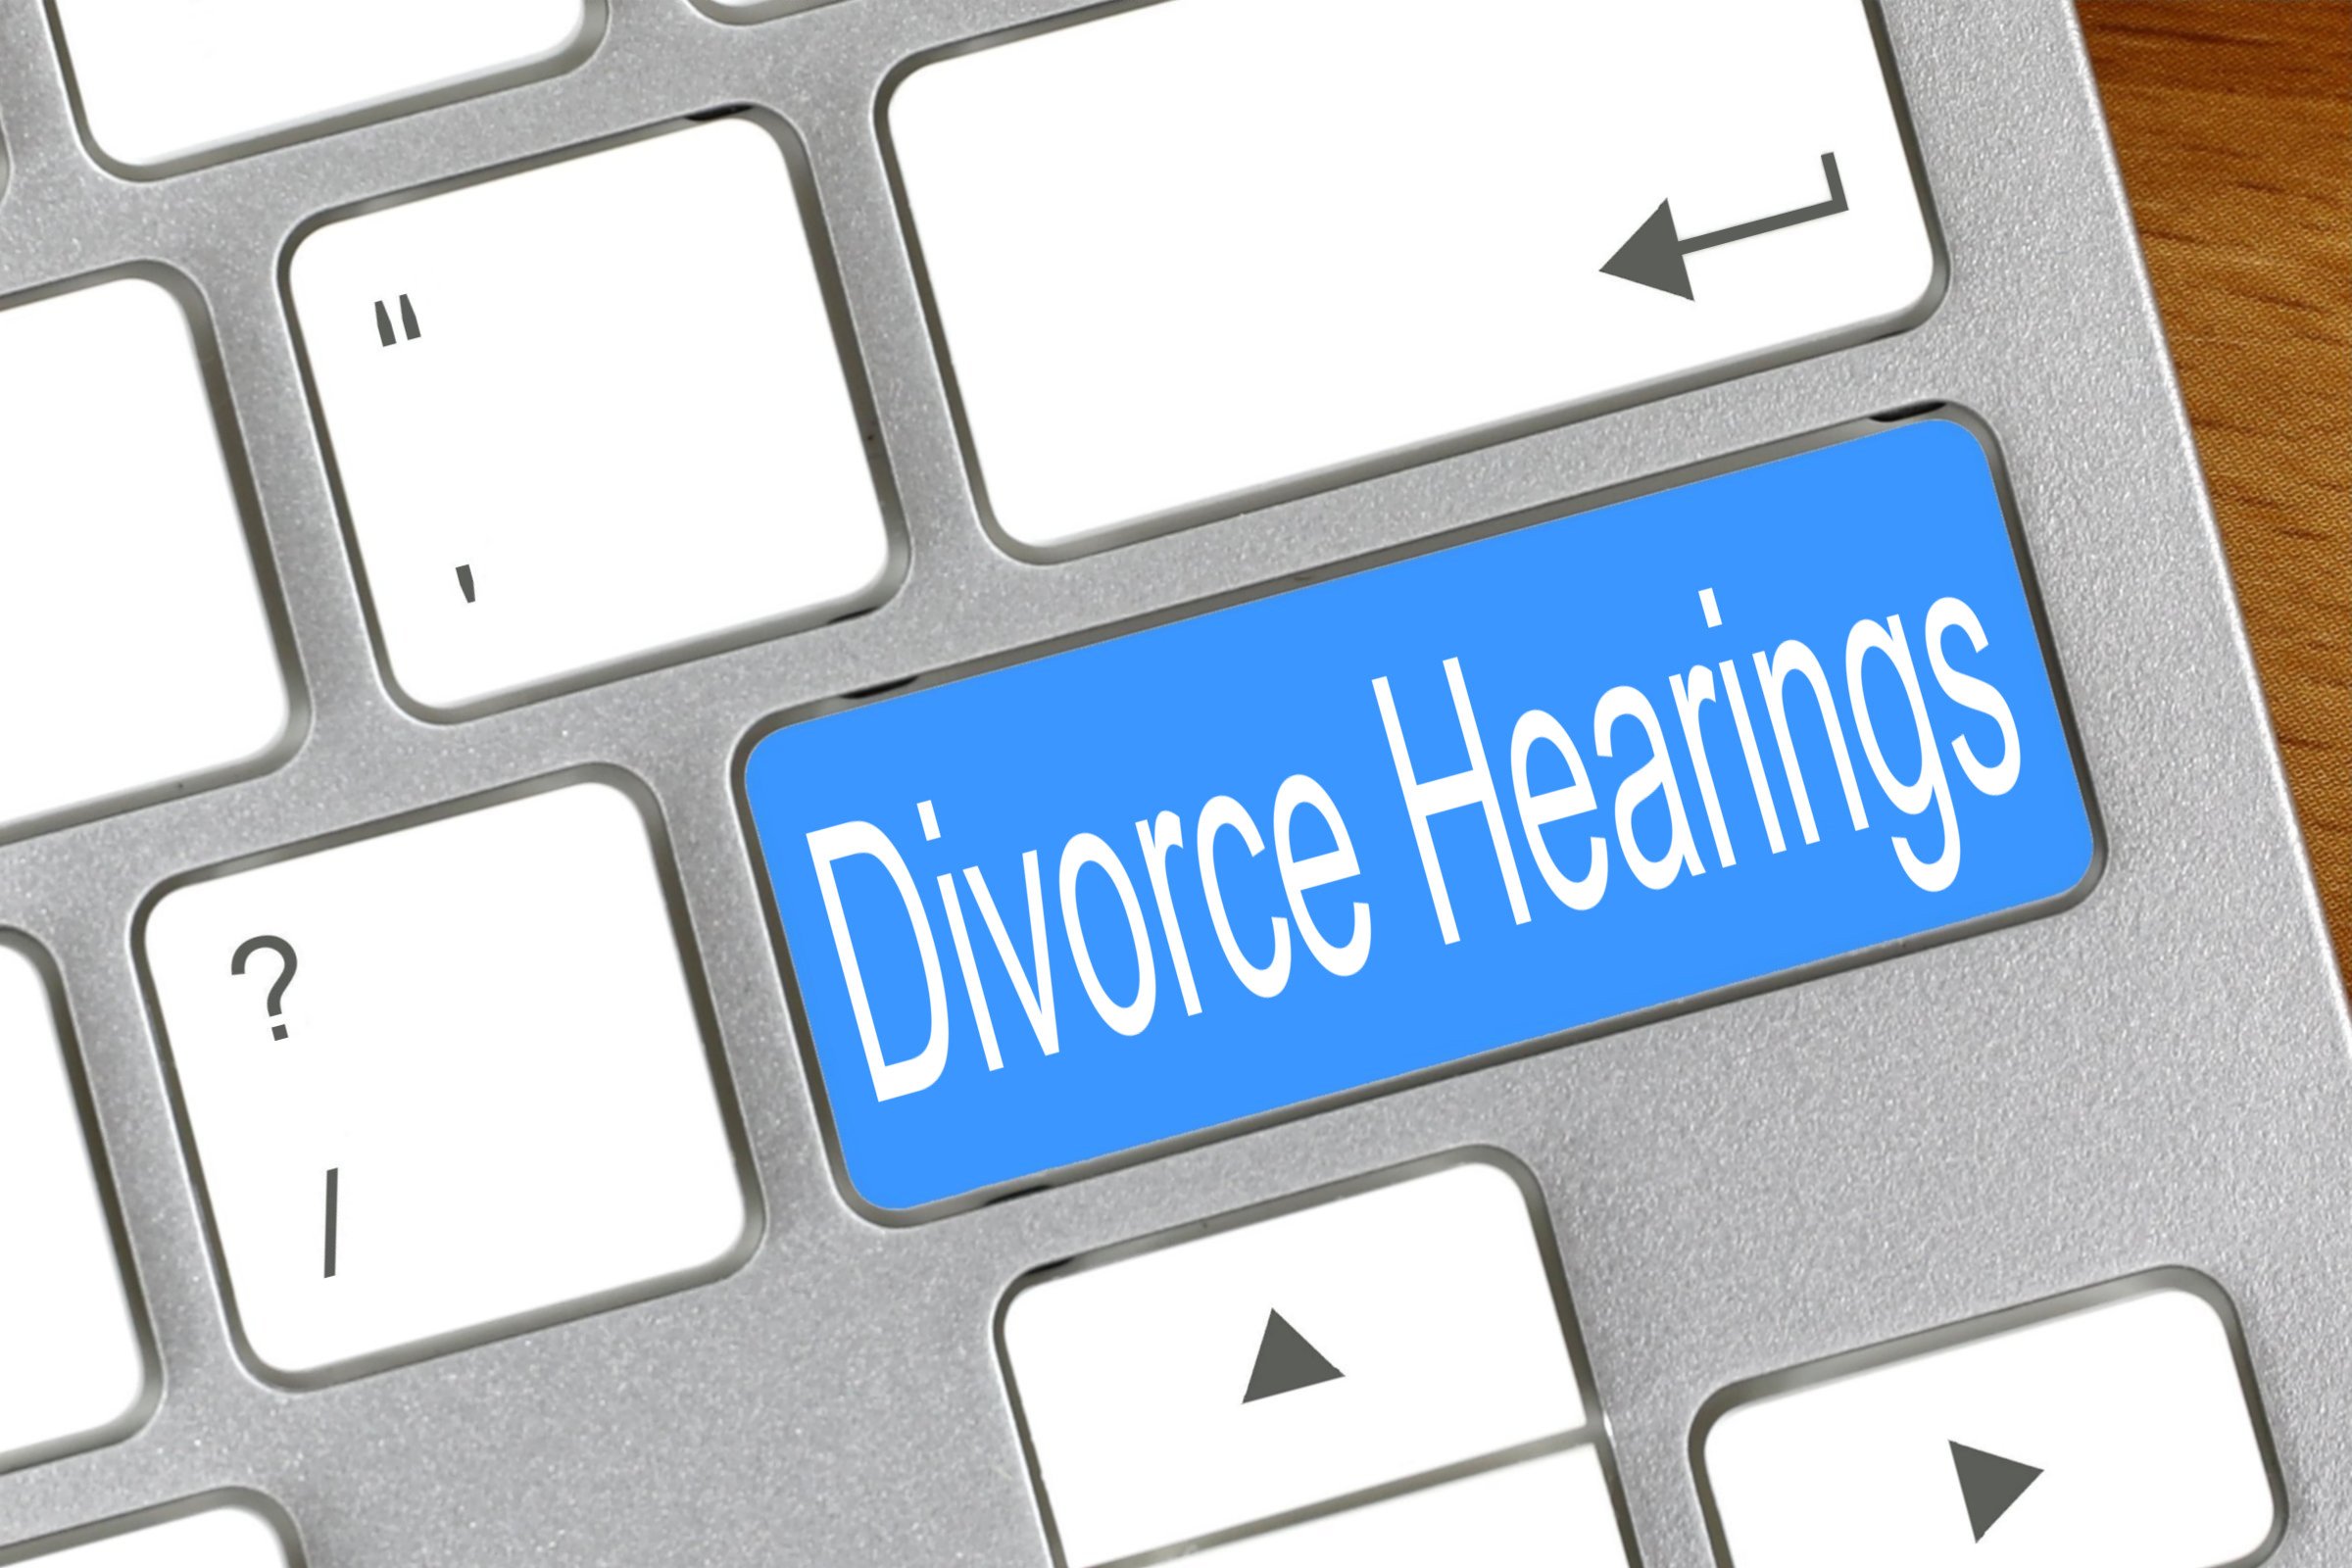 divorce hearings